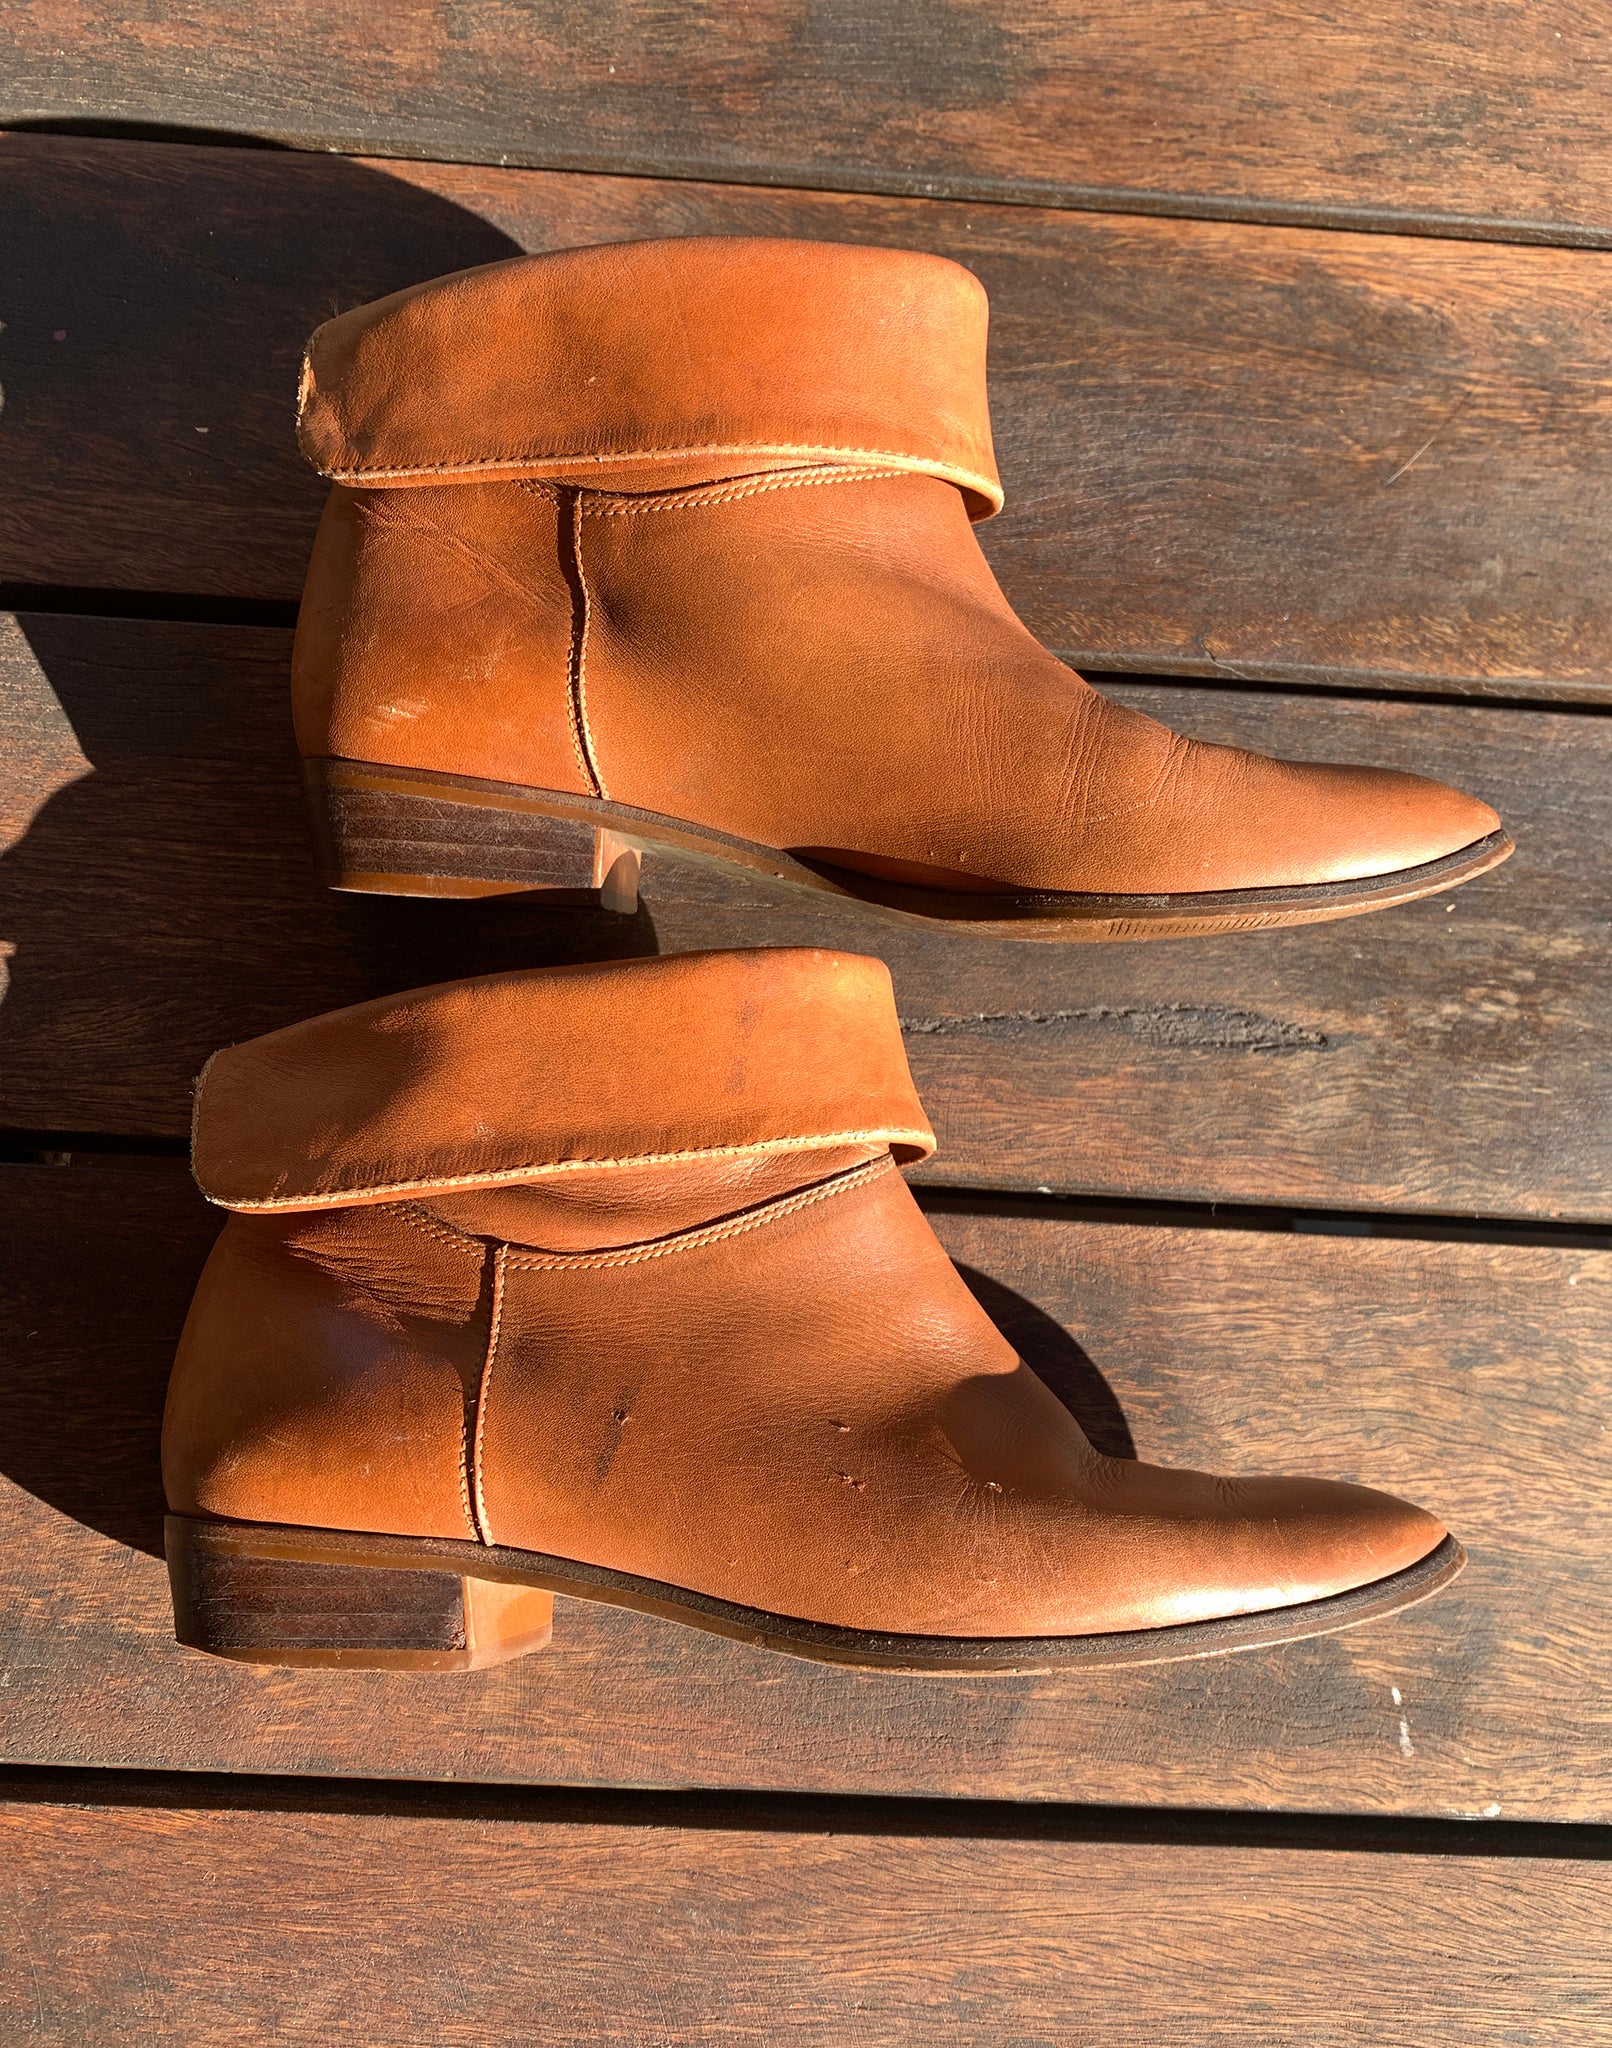 Vintage 80's Tan Brown Ankle Boots - Size Aus 7 1/2 38 Eur